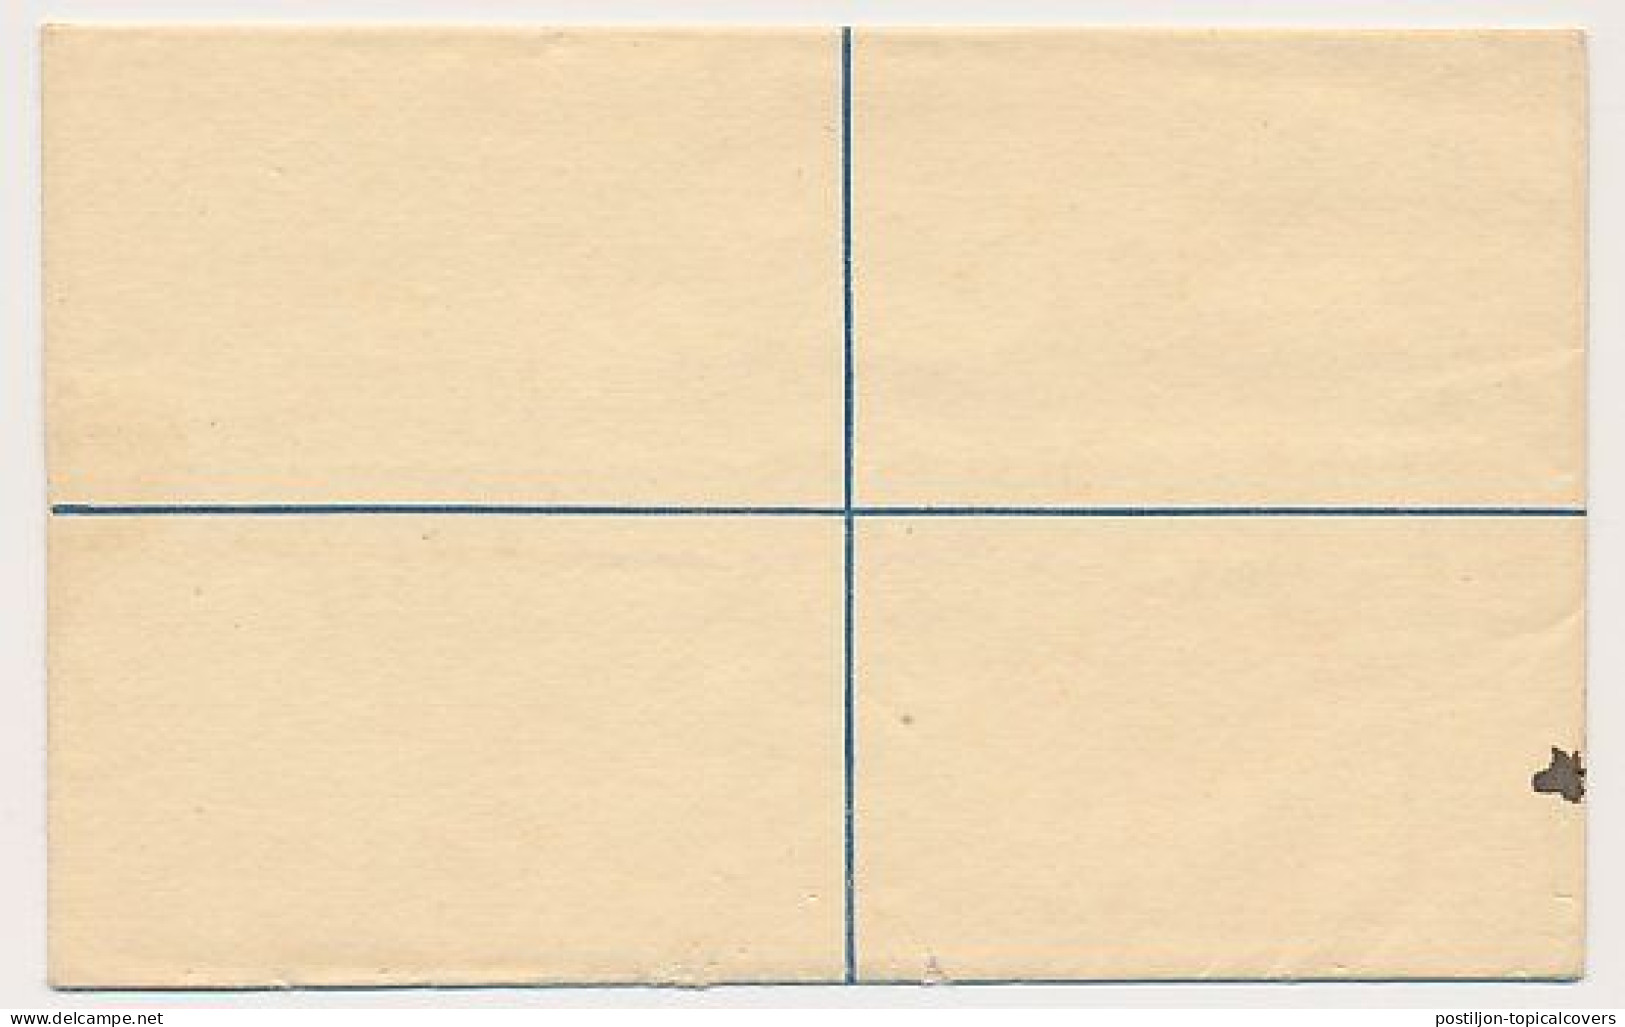 Registered Letter Gold Coast - Postal Stationery - Côte D'Or (...-1957)